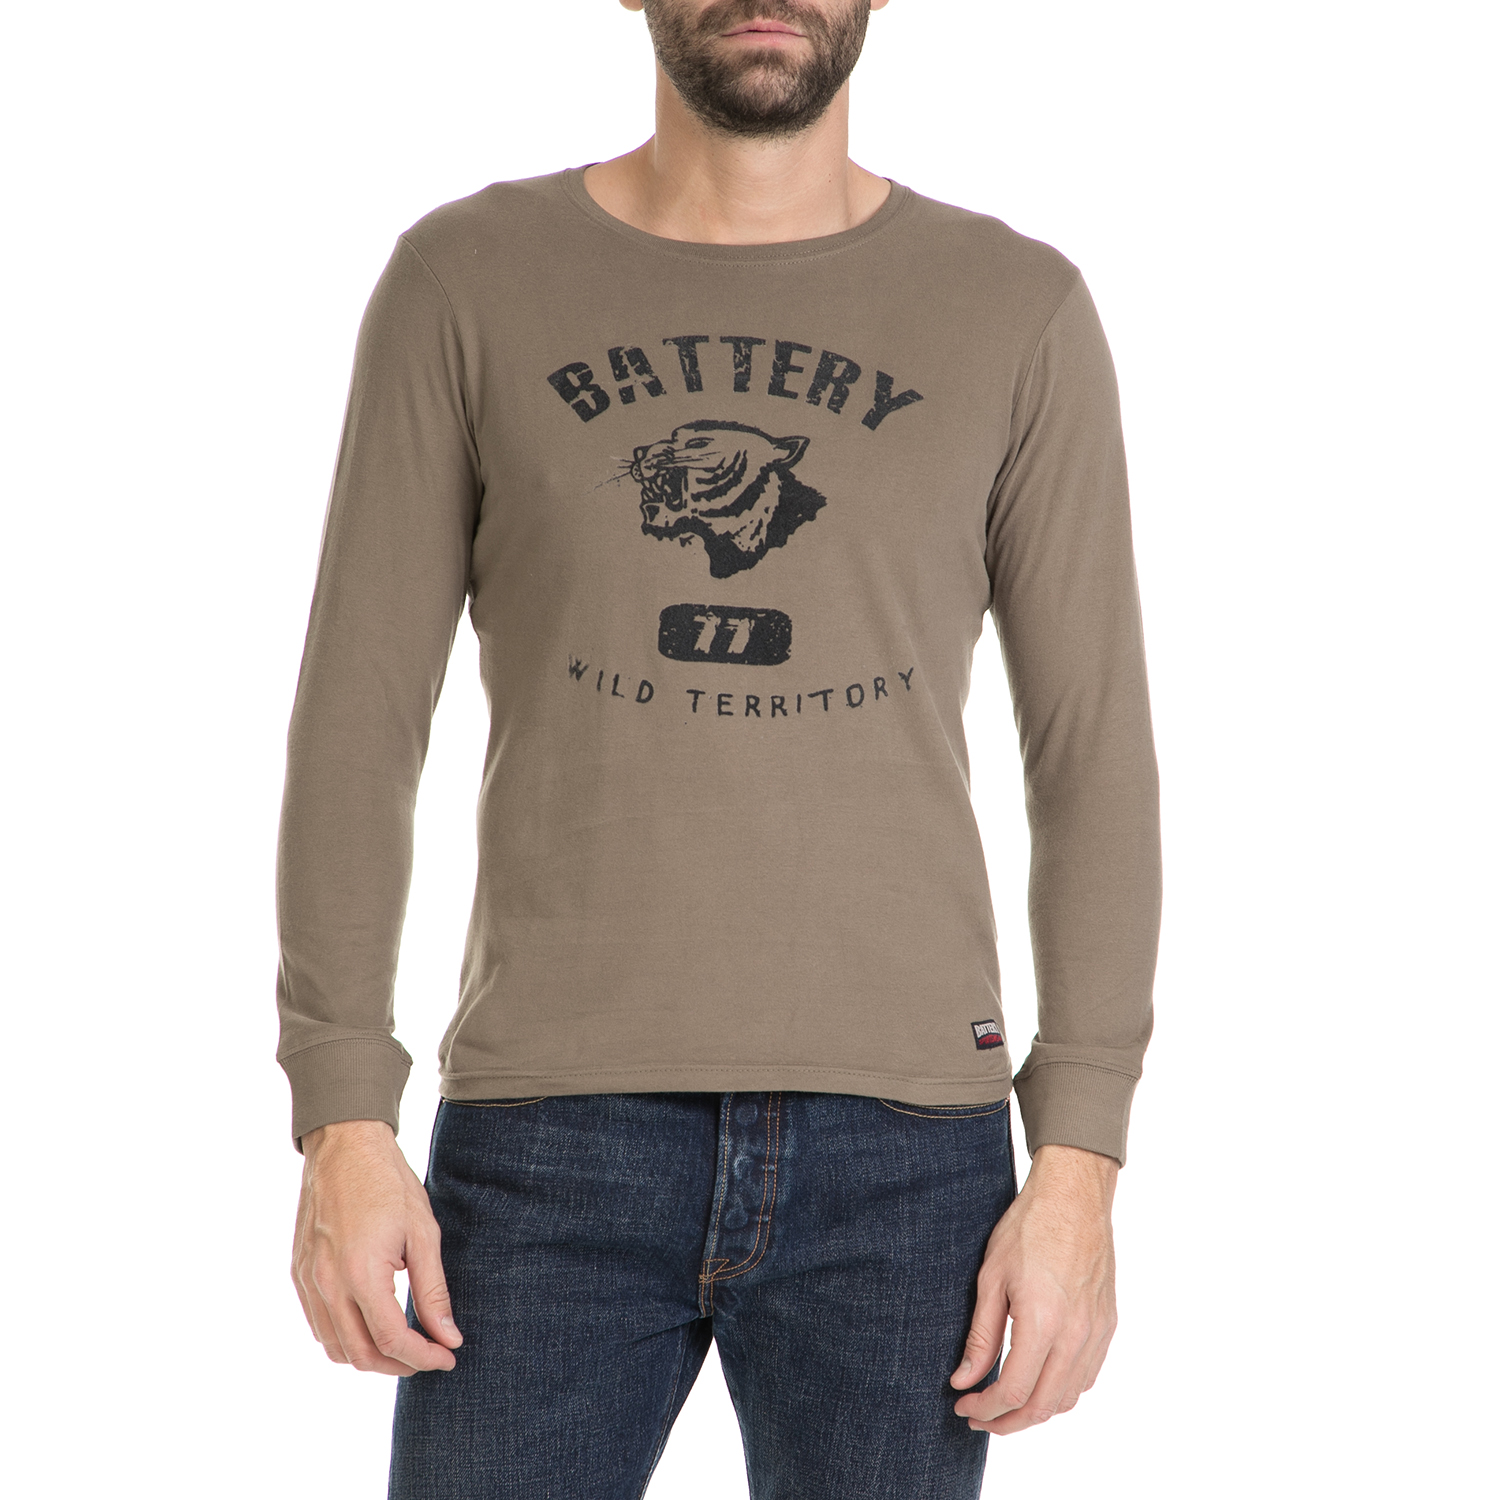 BATTERY - Ανδρική μπλούζα BATTERY μπεζ Ανδρικά/Ρούχα/Μπλούζες/Μακρυμάνικες